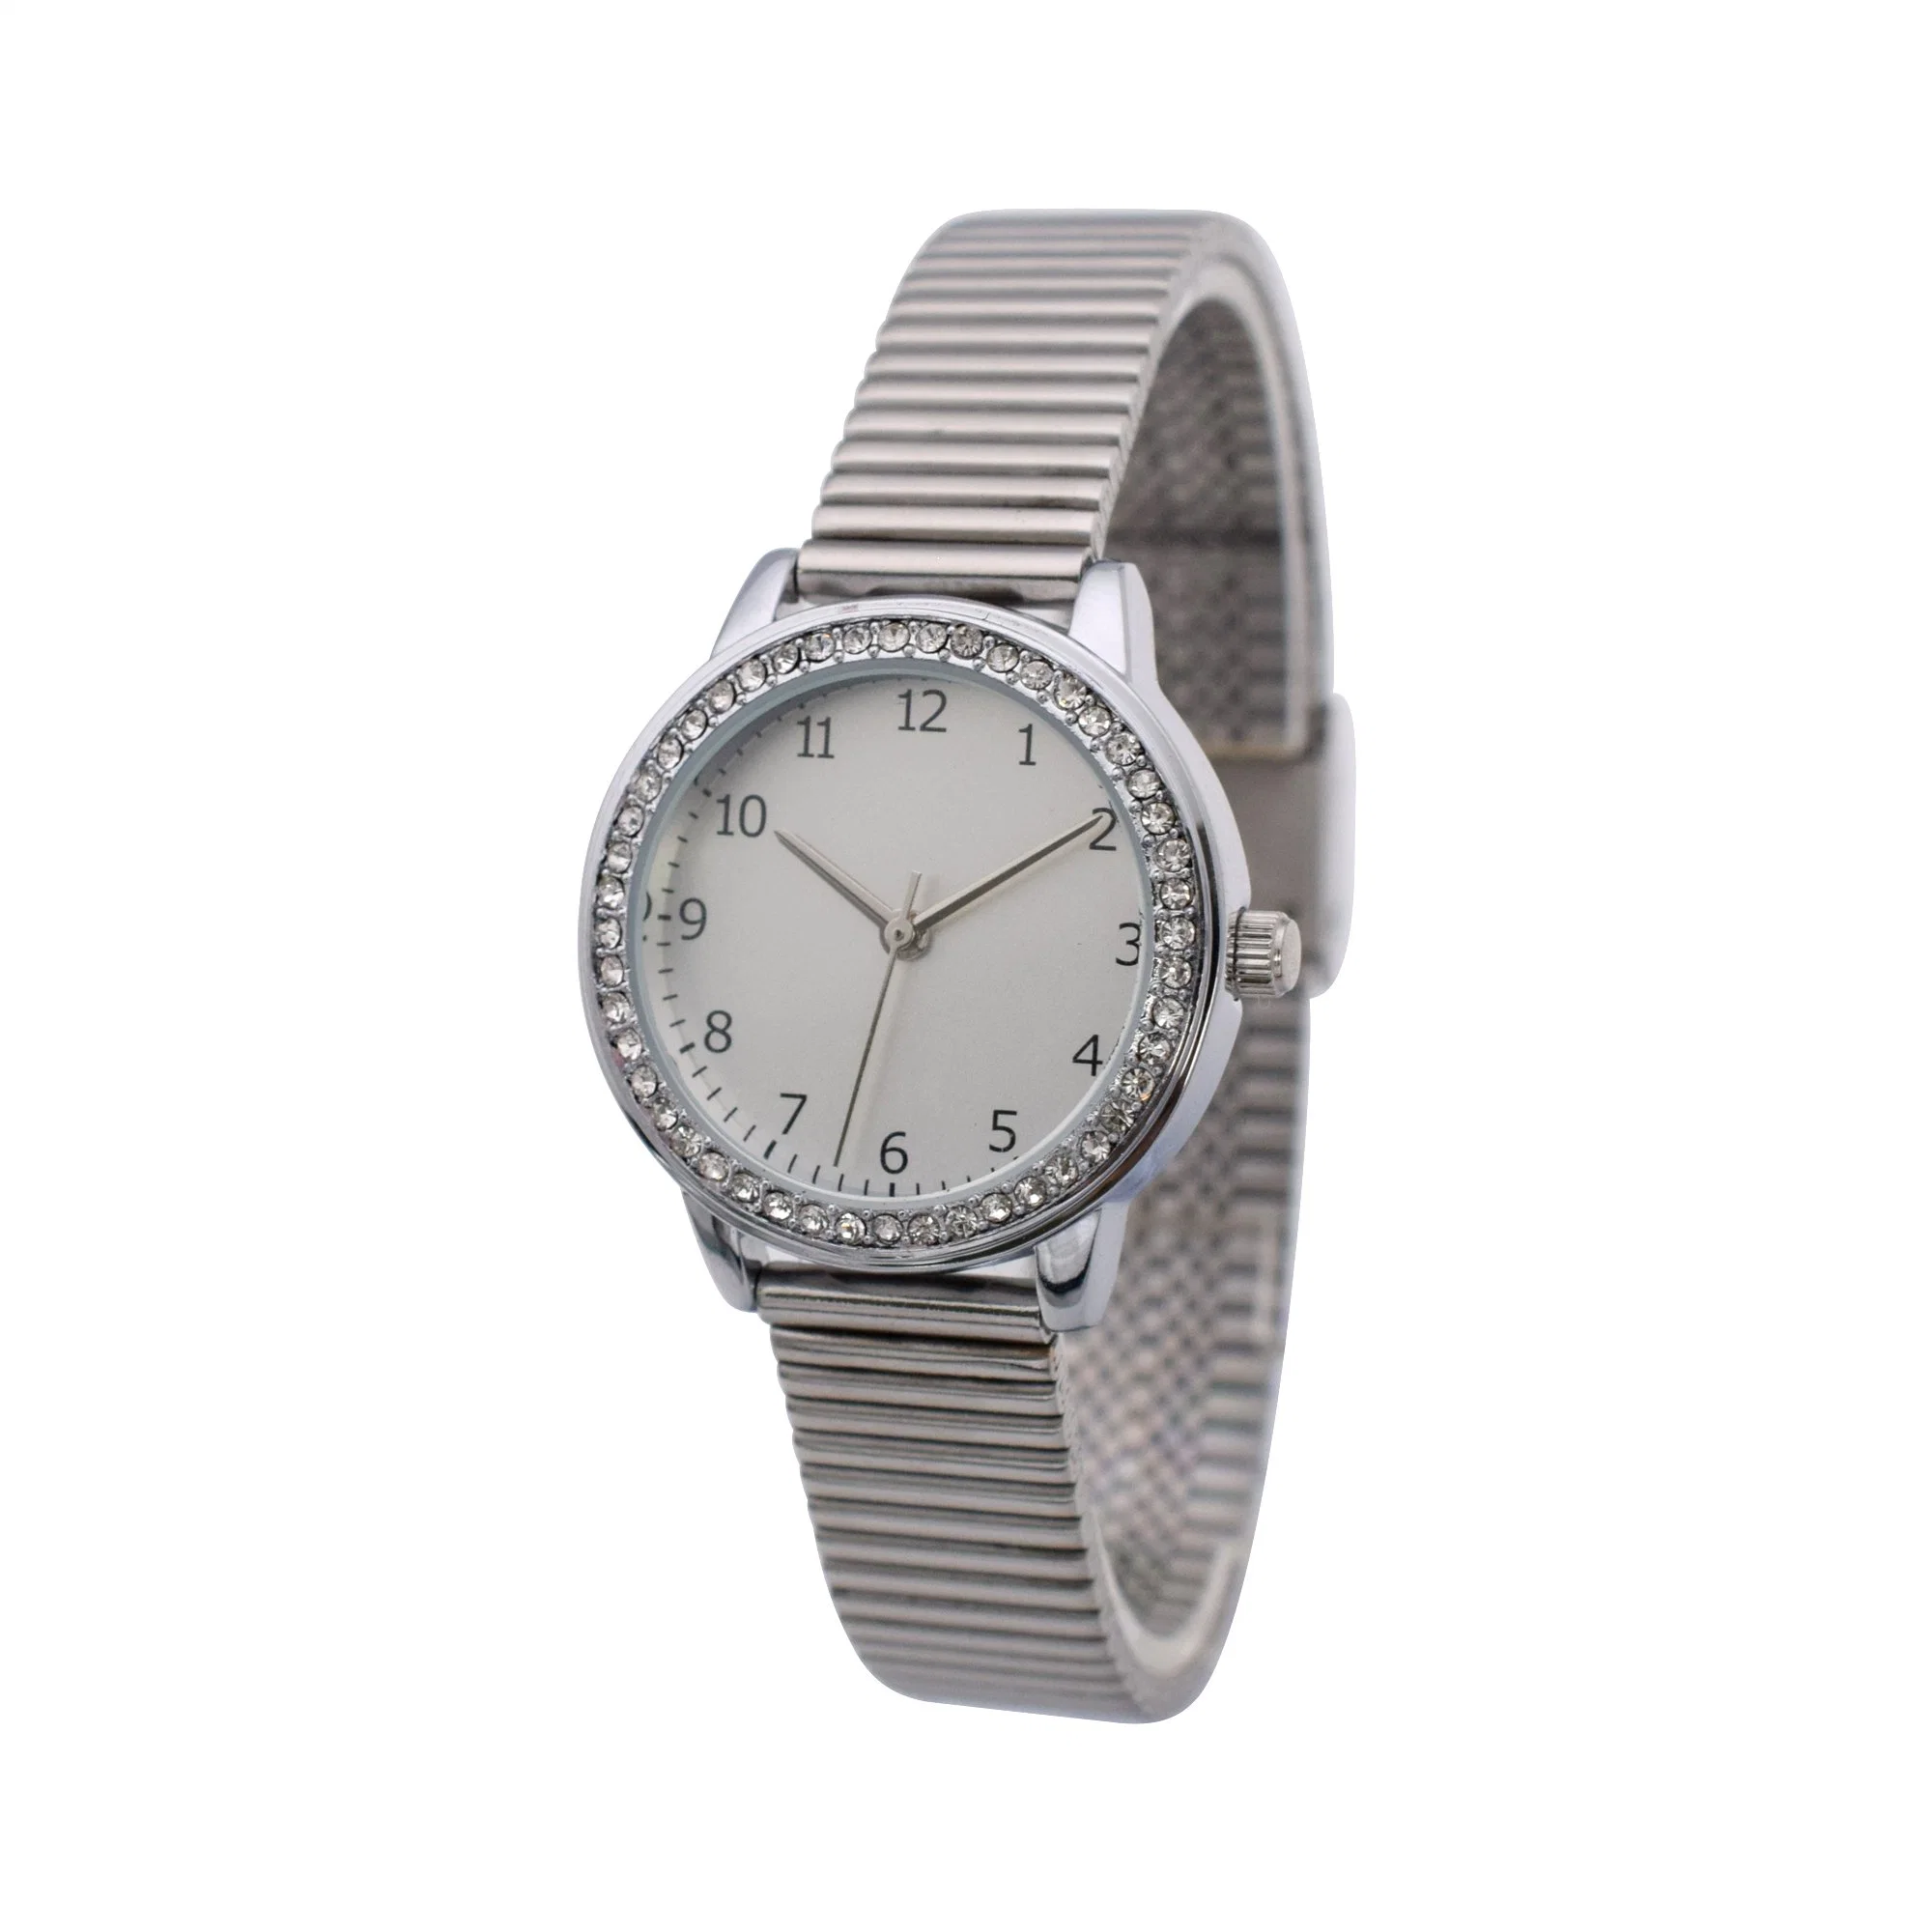 En acier inoxydable cadeau Watch Watch montre à quartz Fashion Watch Dame veille promotionnelle